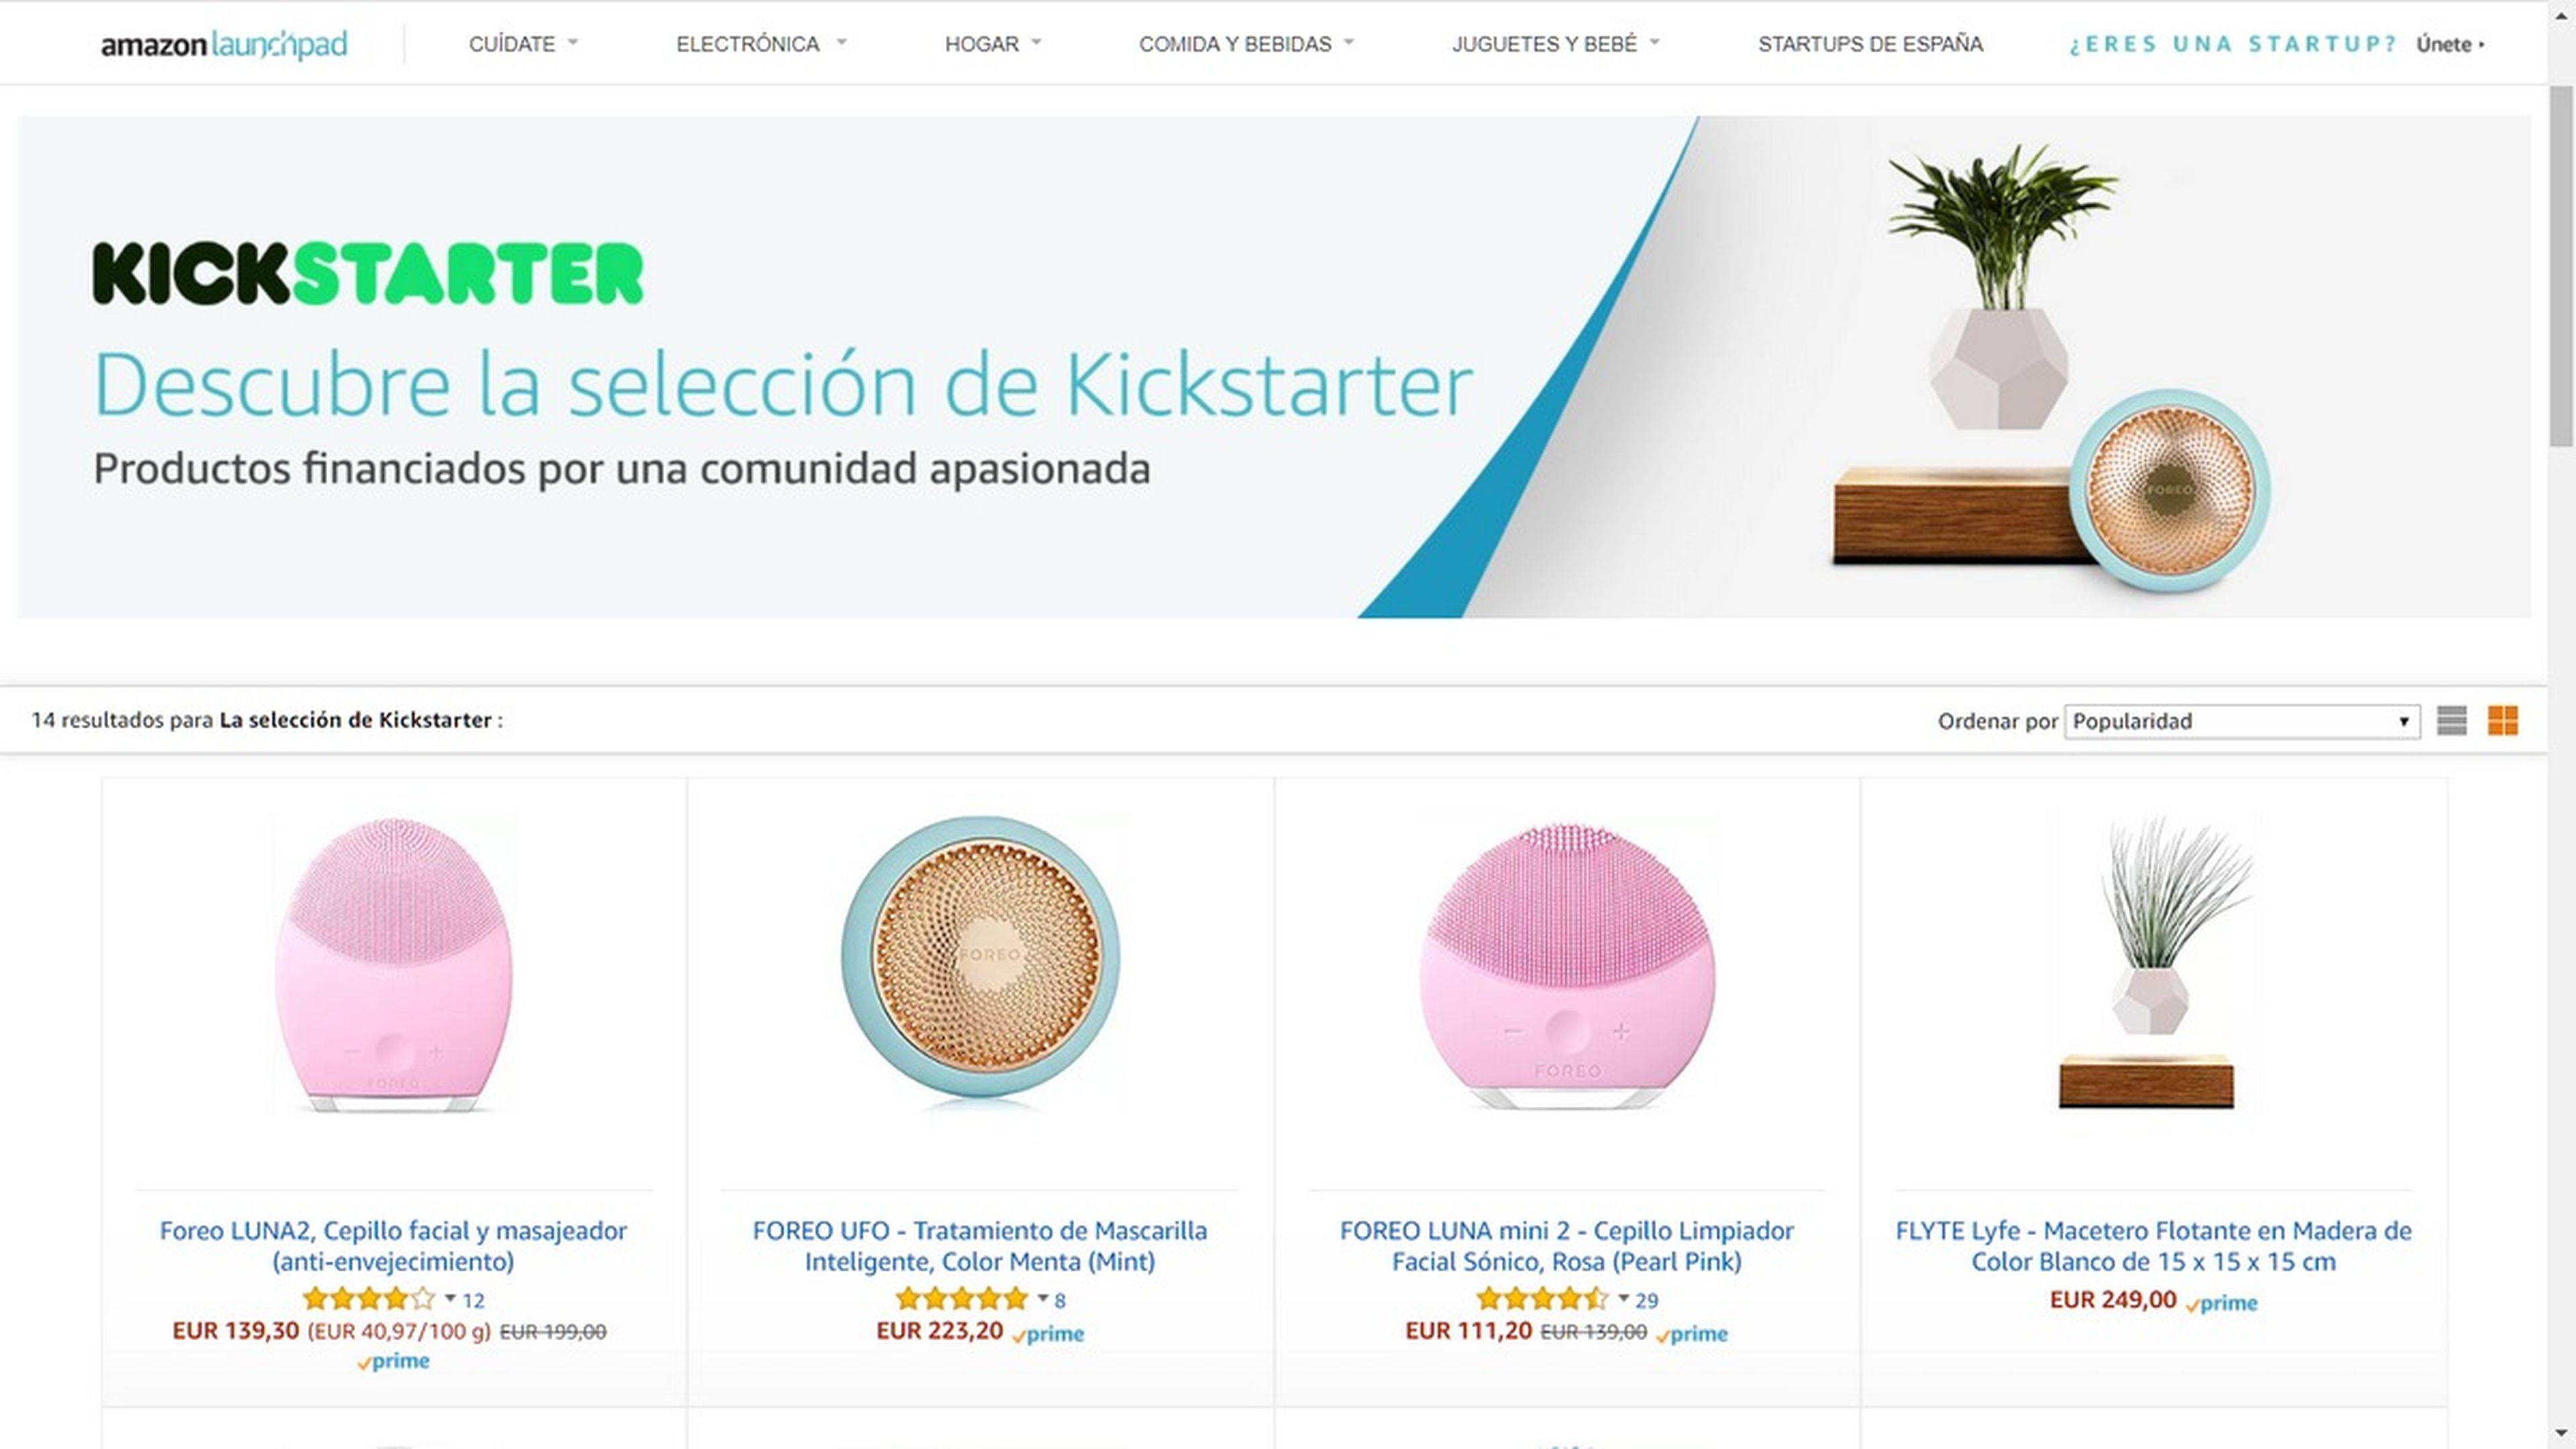 Amazon Launchpad llega a España, compra productos de KickStarter y Startups en Amazon